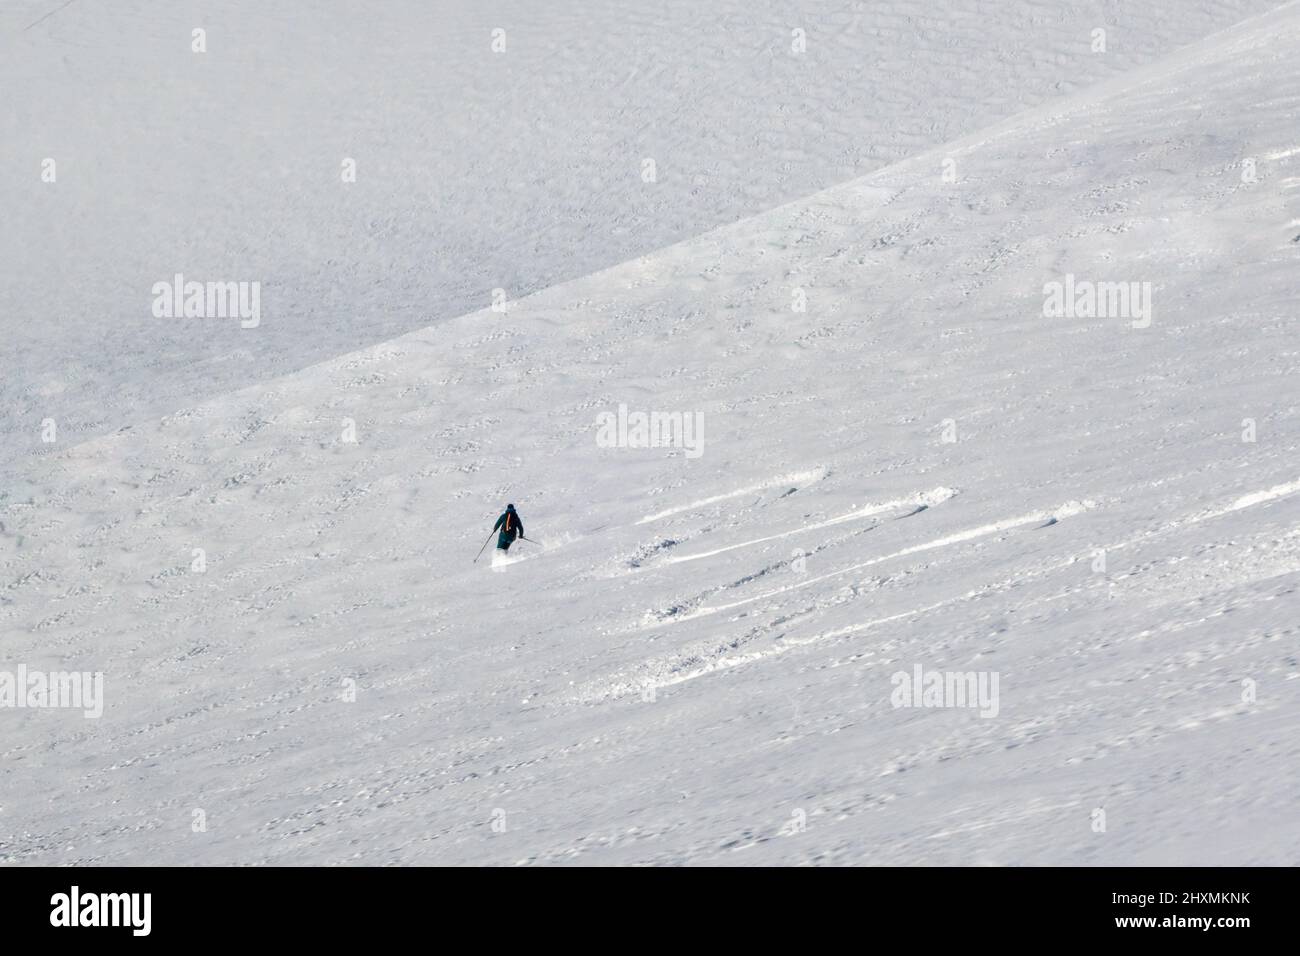 Chamonix, France - 12 février 2022 : skieur freeride en hiver, en montagne, faisant des premières pistes dans la neige intacte de la Vallée Blanche Banque D'Images